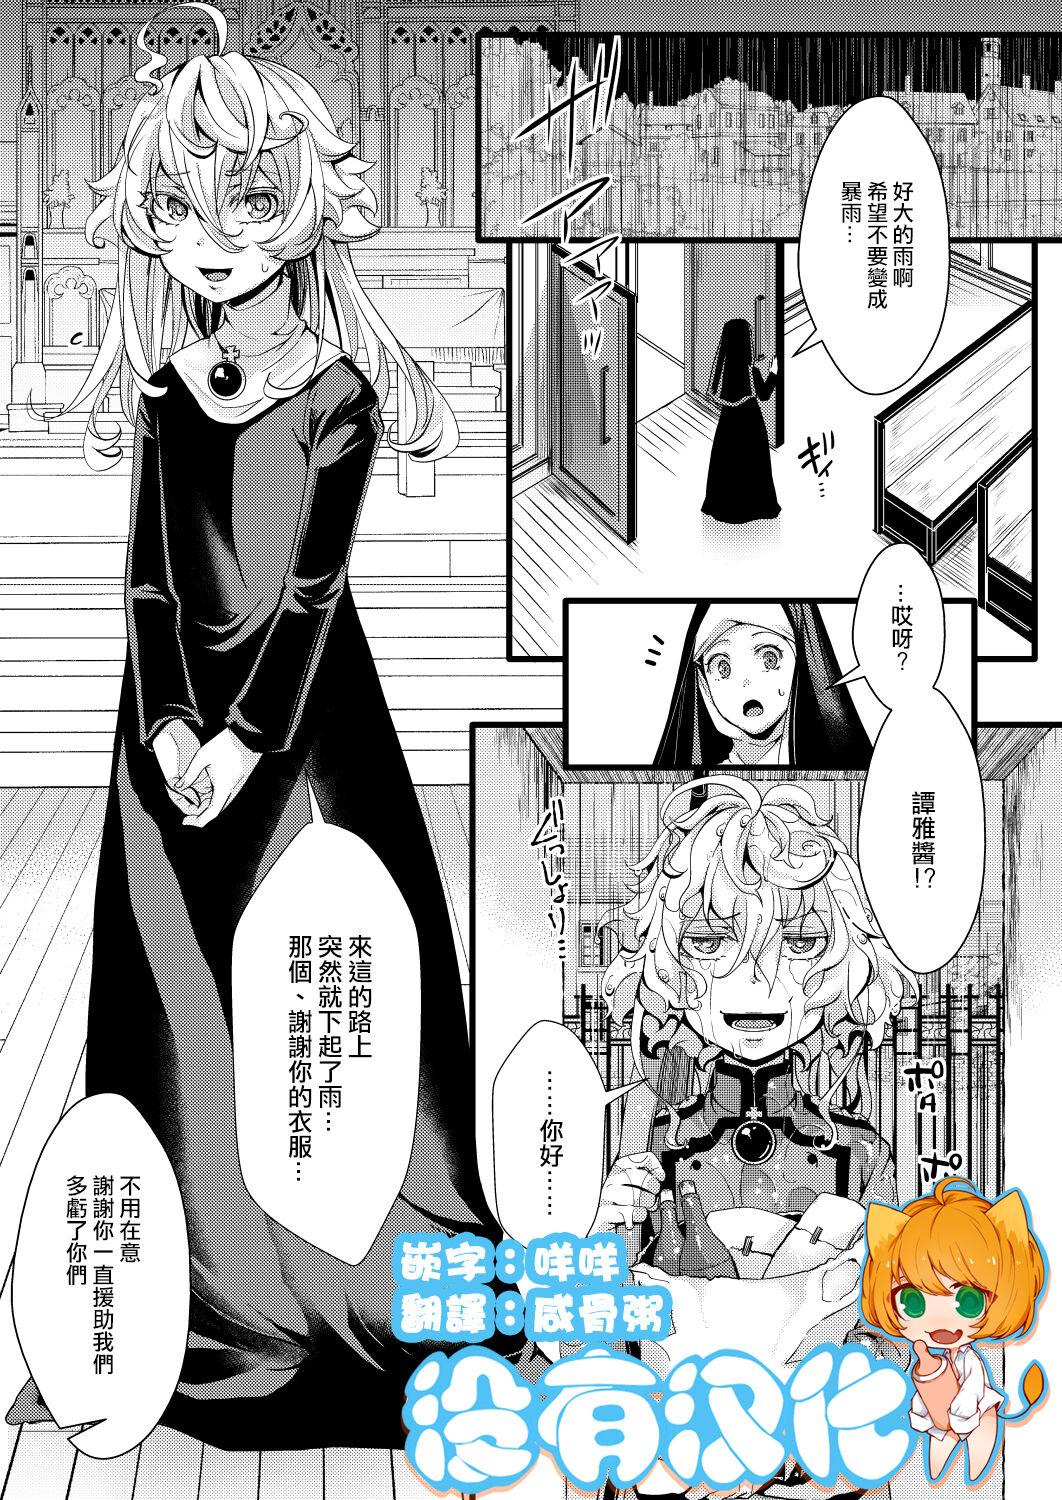 Gostoso Sister Fuku na Tanya-chan no Hanashi - Youjo senki | saga of tanya the evil Heels - Page 1